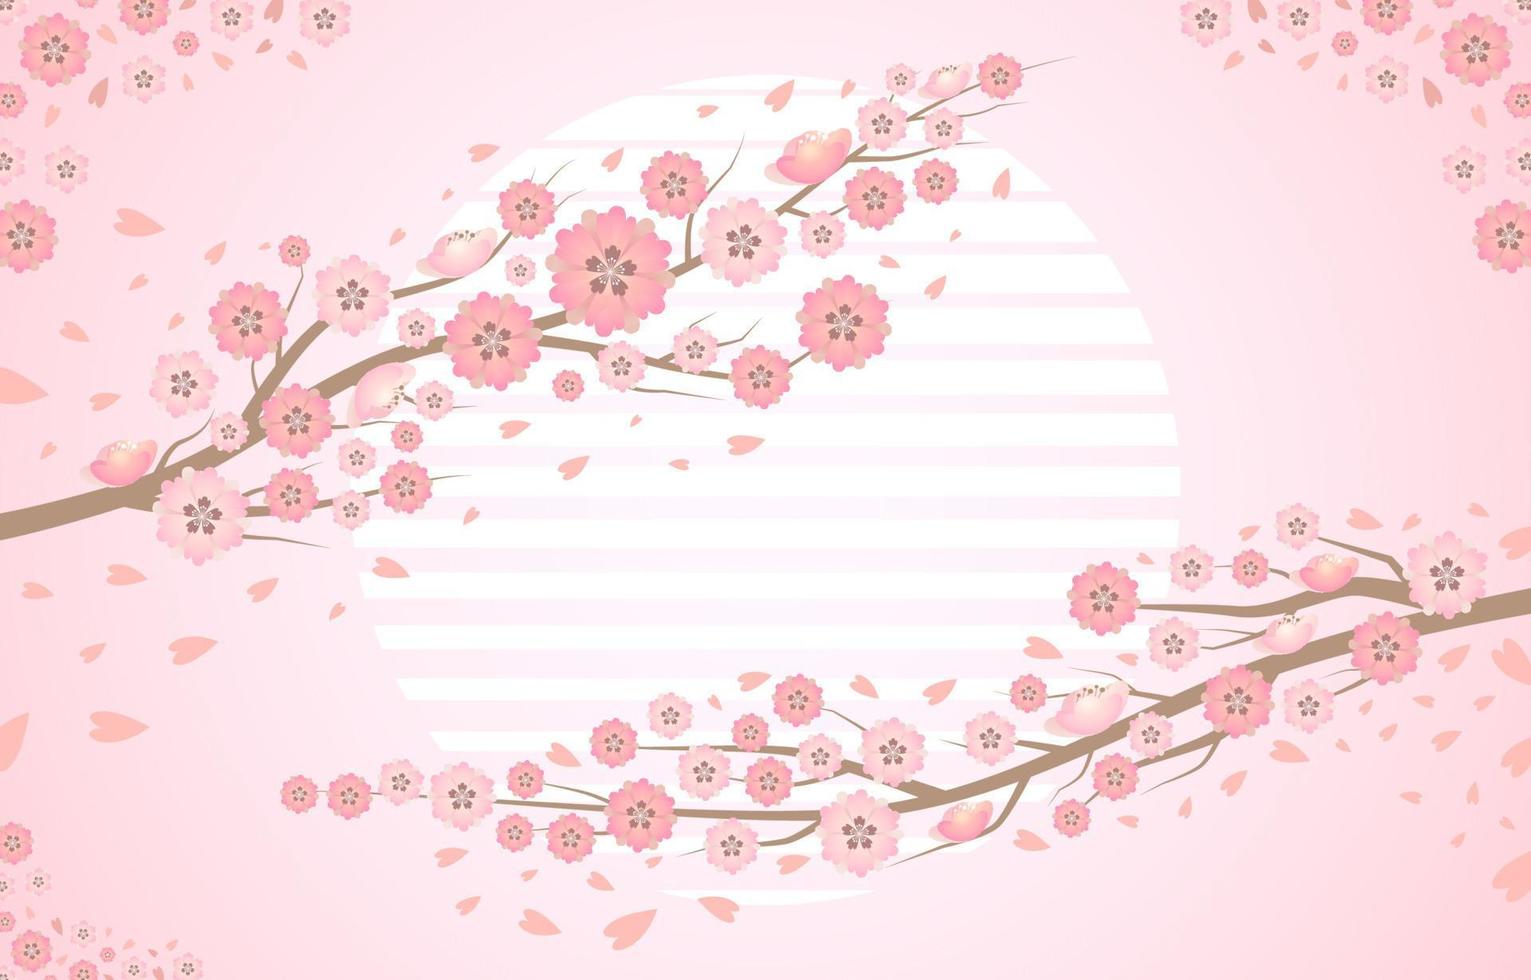 fundo floral com conceito de flor de cerejeira em flor rosa vetor